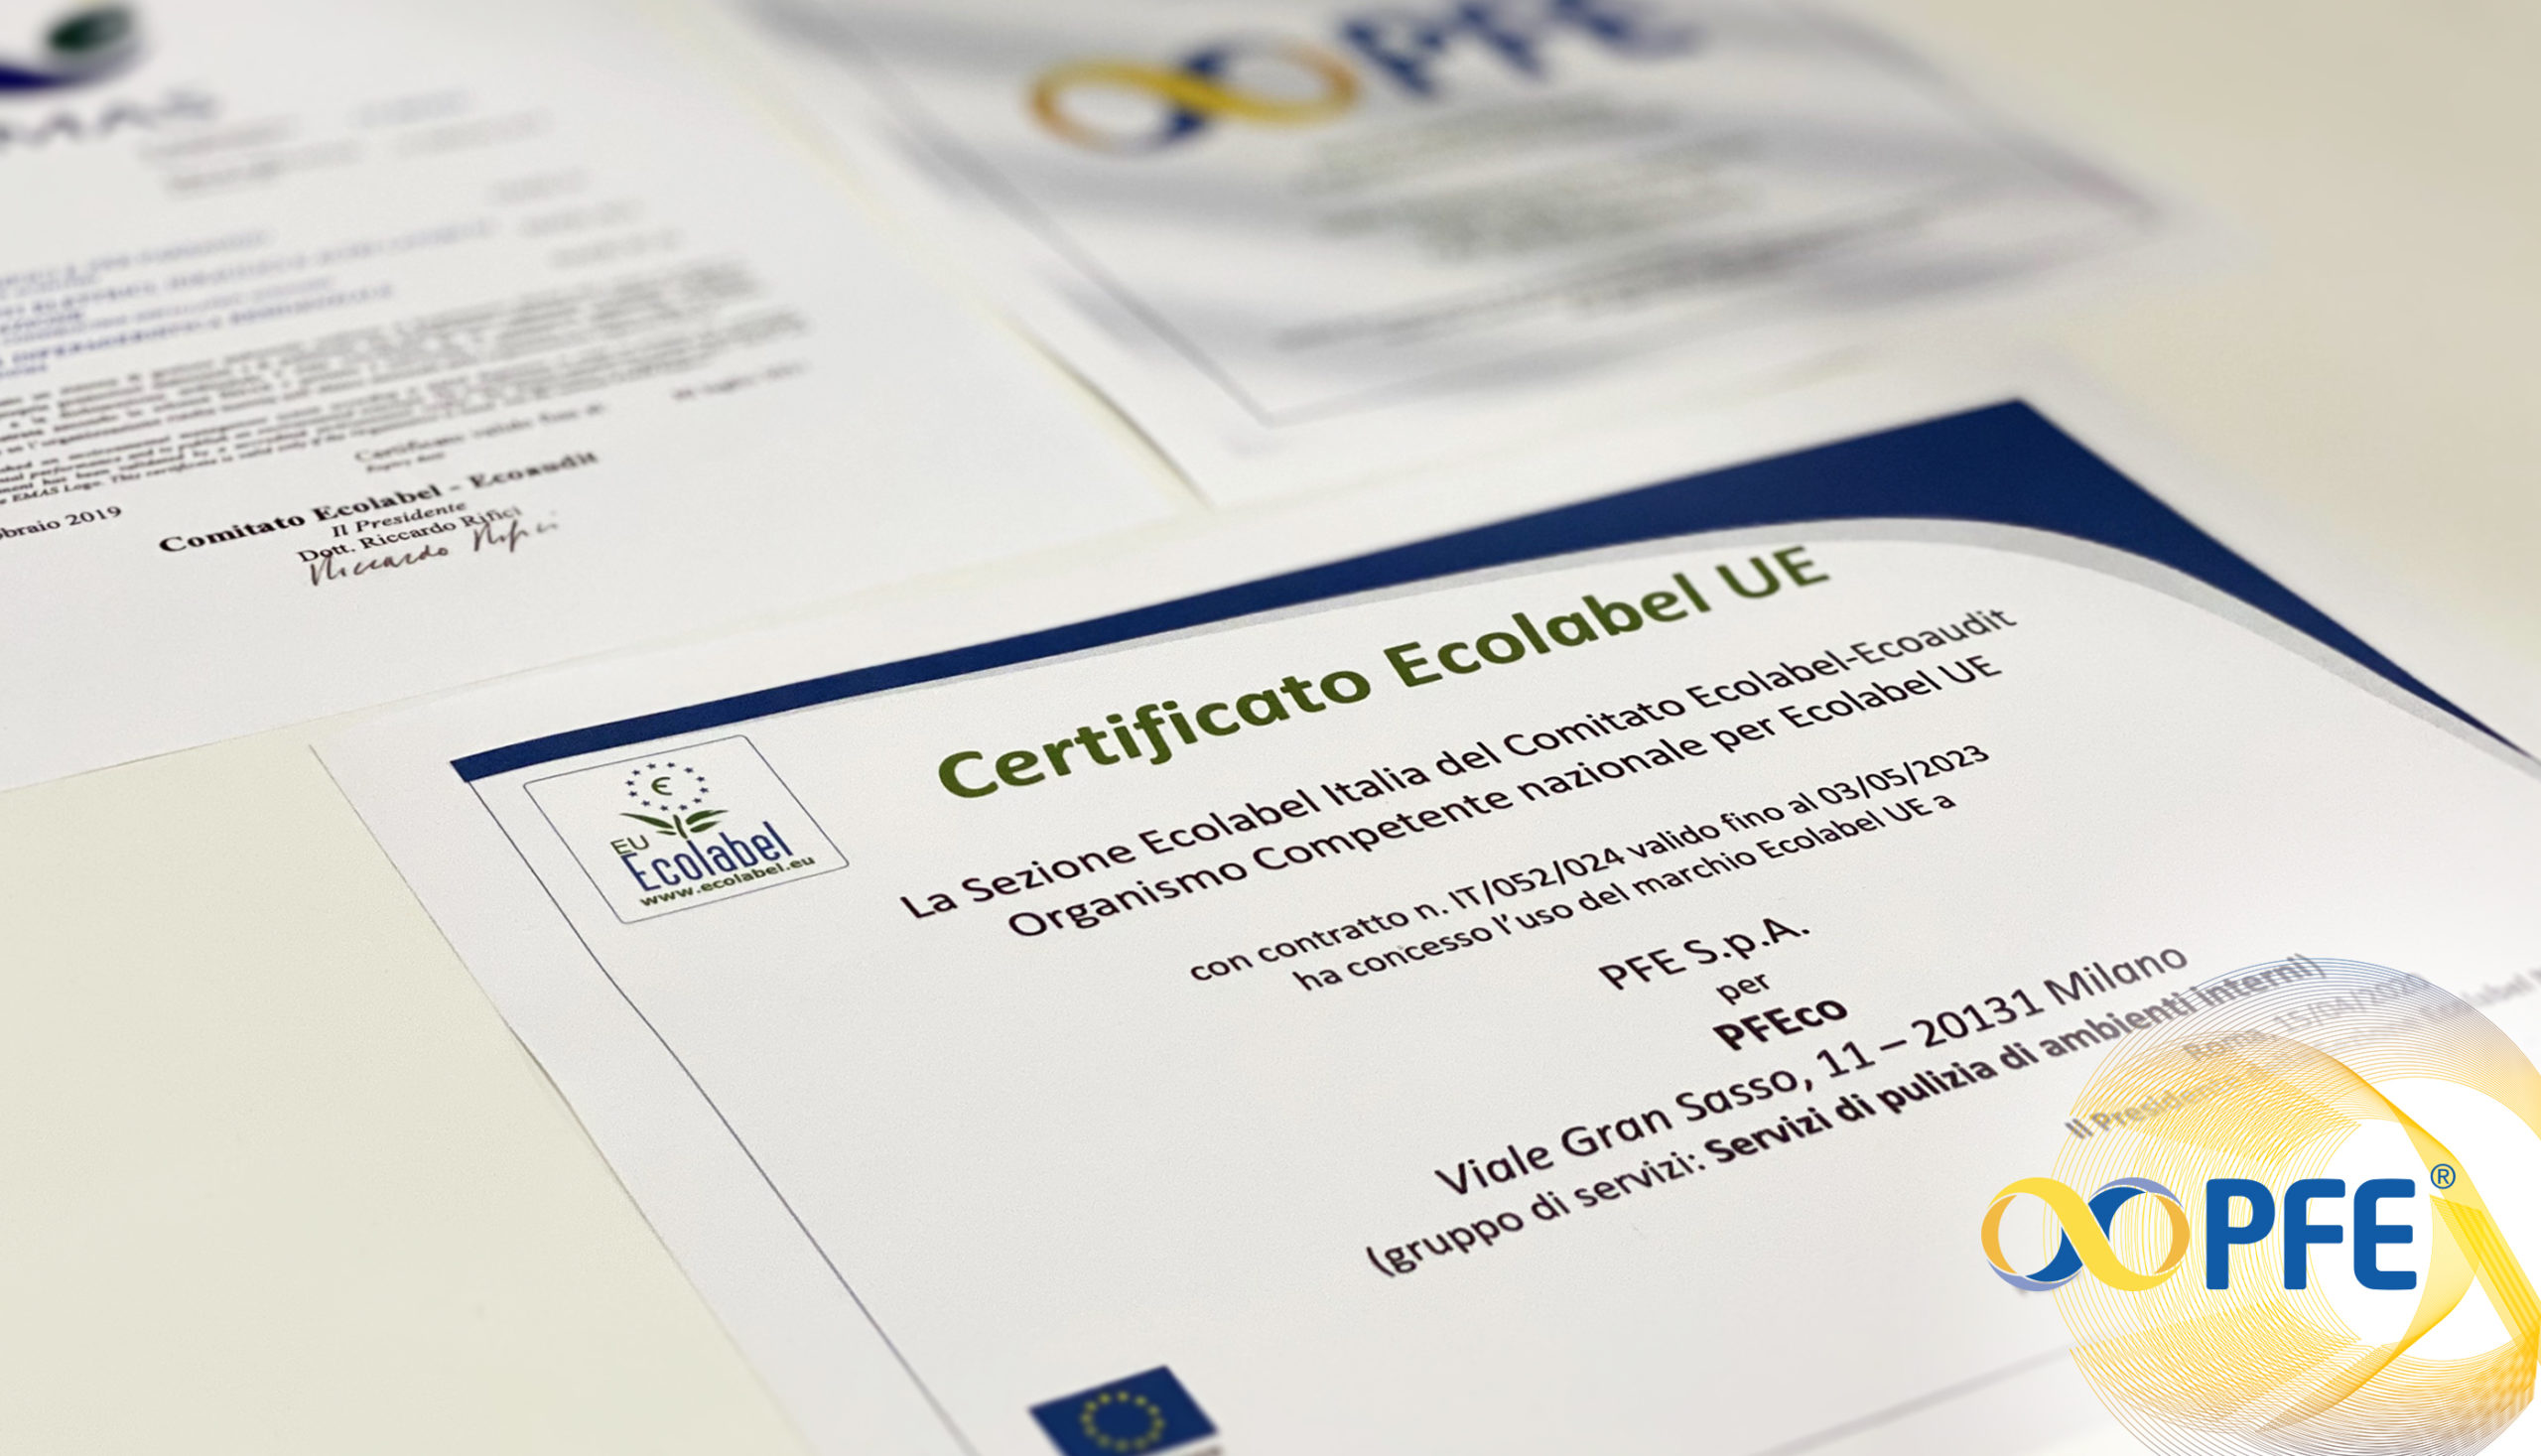 PFE green: arriva la certificazione Ecolabel. PFE autorizzata ad utilizzare il marchio istituito dall’Unione Europea